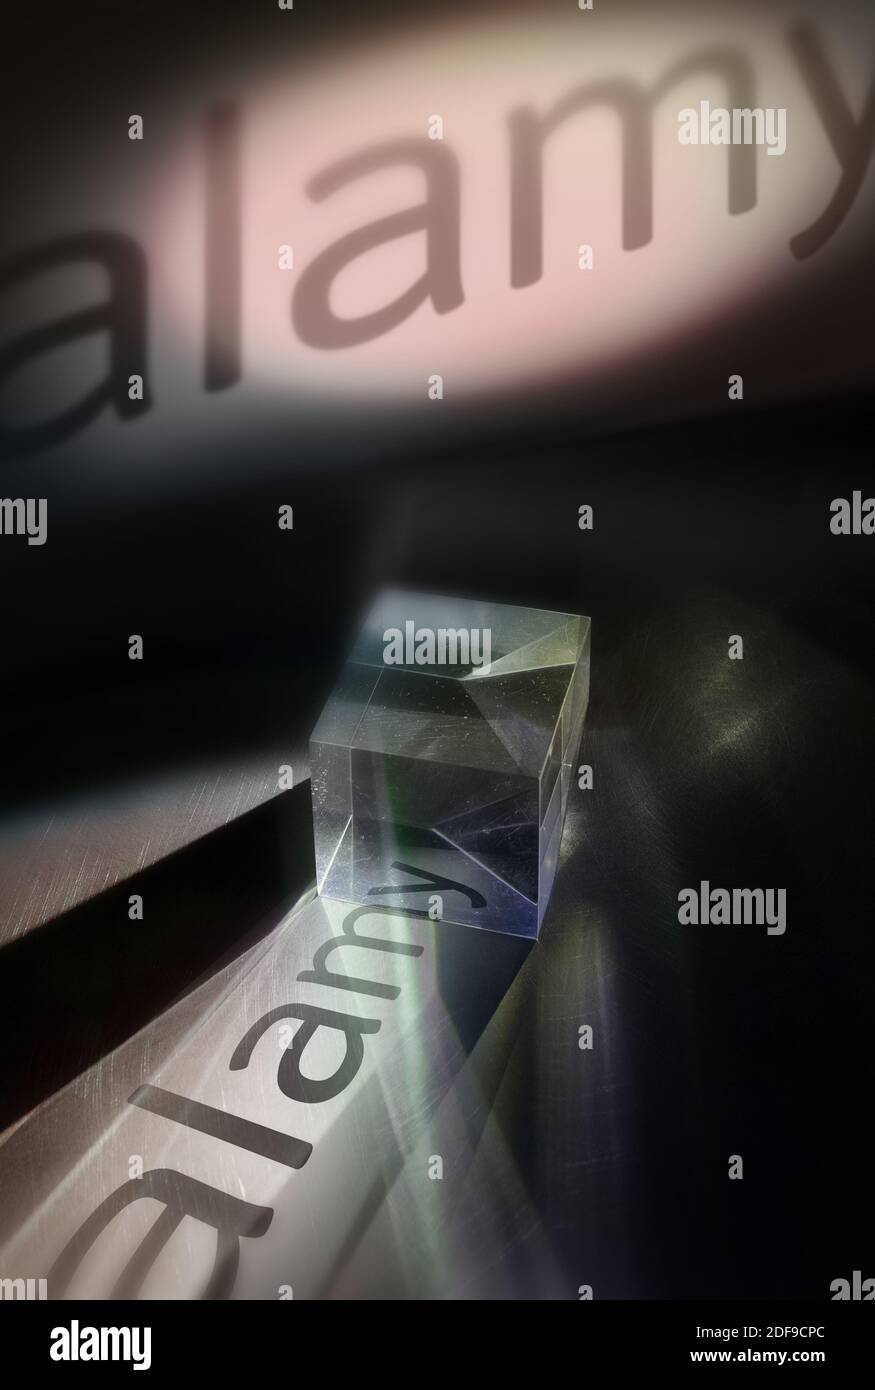 Une vue artistique du logo Alamy, à travers les réflexions d'un bloc de verre. Banque D'Images